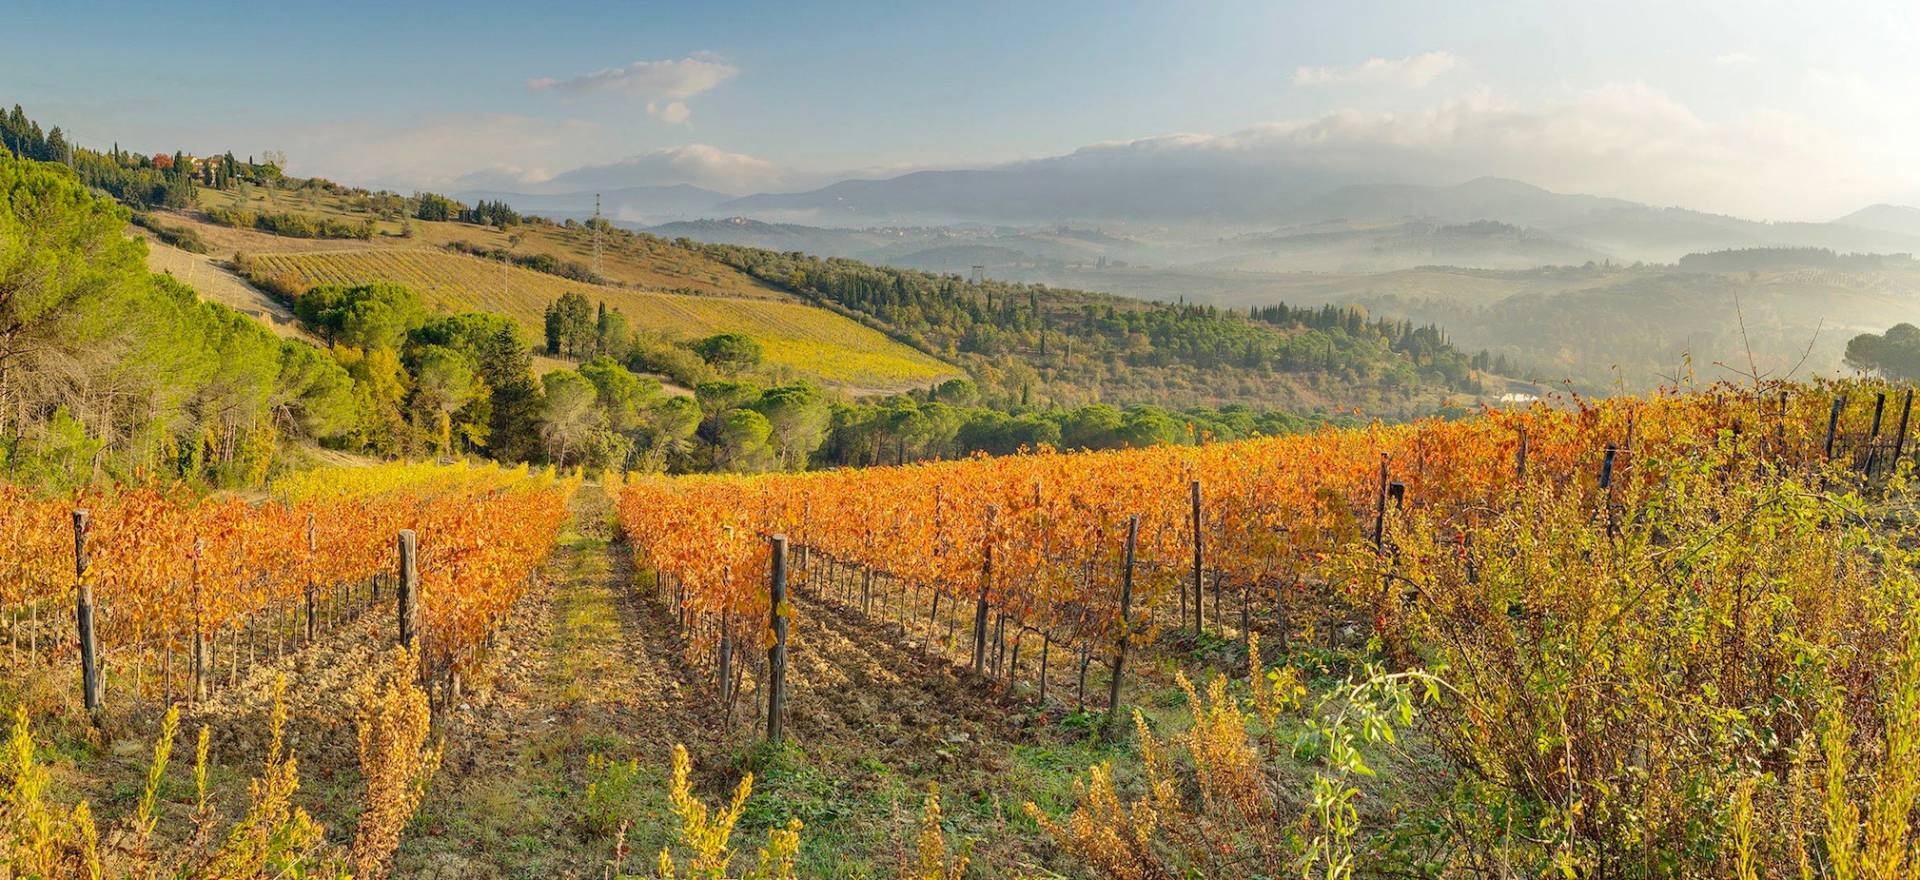 Agriturismo Tuscany Agriturismo surrounded by vineyards near Florence, Tuscany